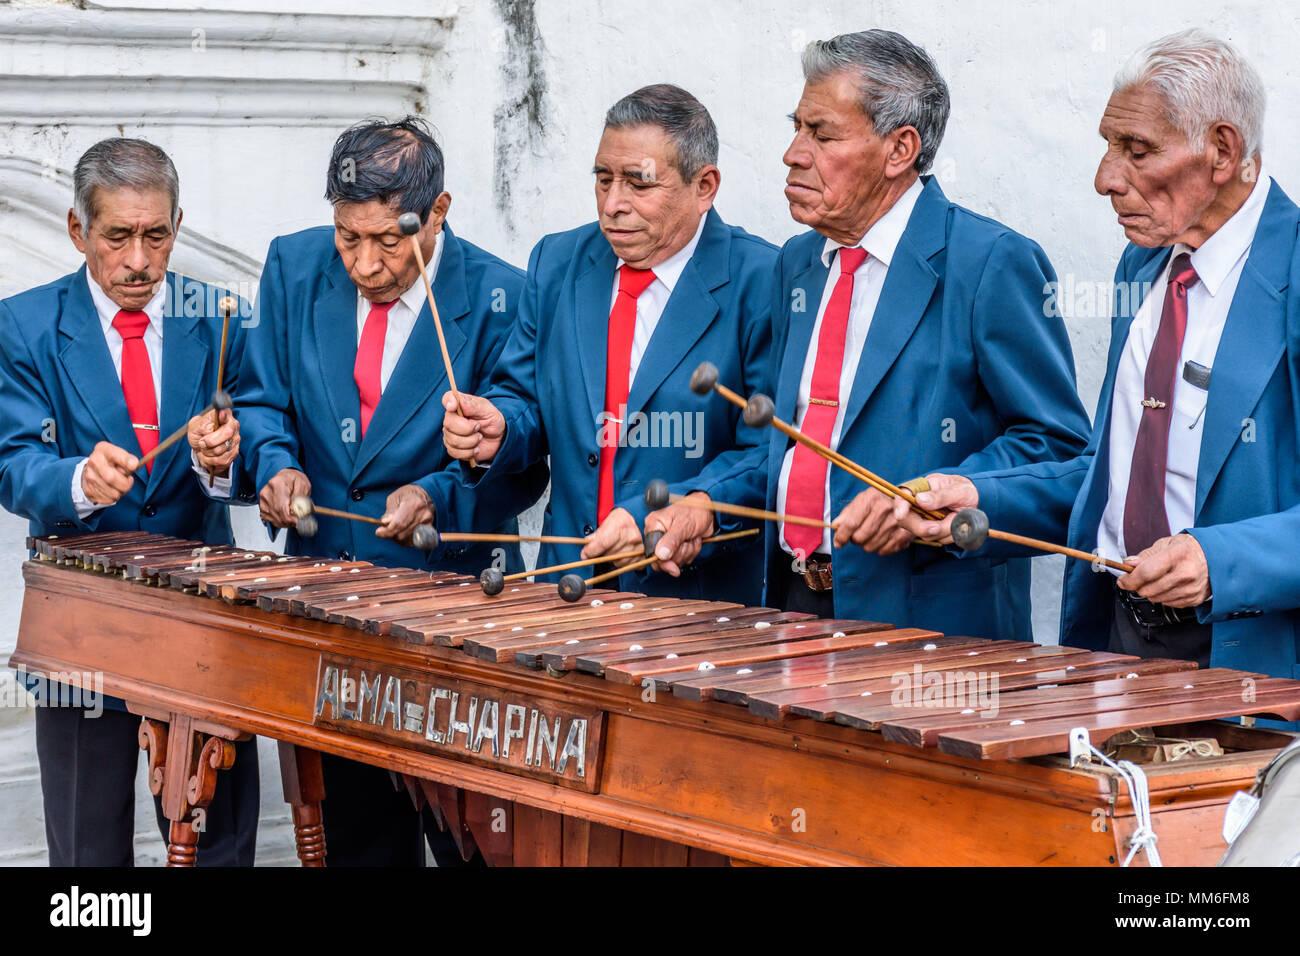 Cuidad Vieja, Guatemala, 7 de diciembre de 2017: marimba local fuera de banda toca celebrar la iglesia Nuestra Señora de la Inmaculada Concepción, día. Foto de stock